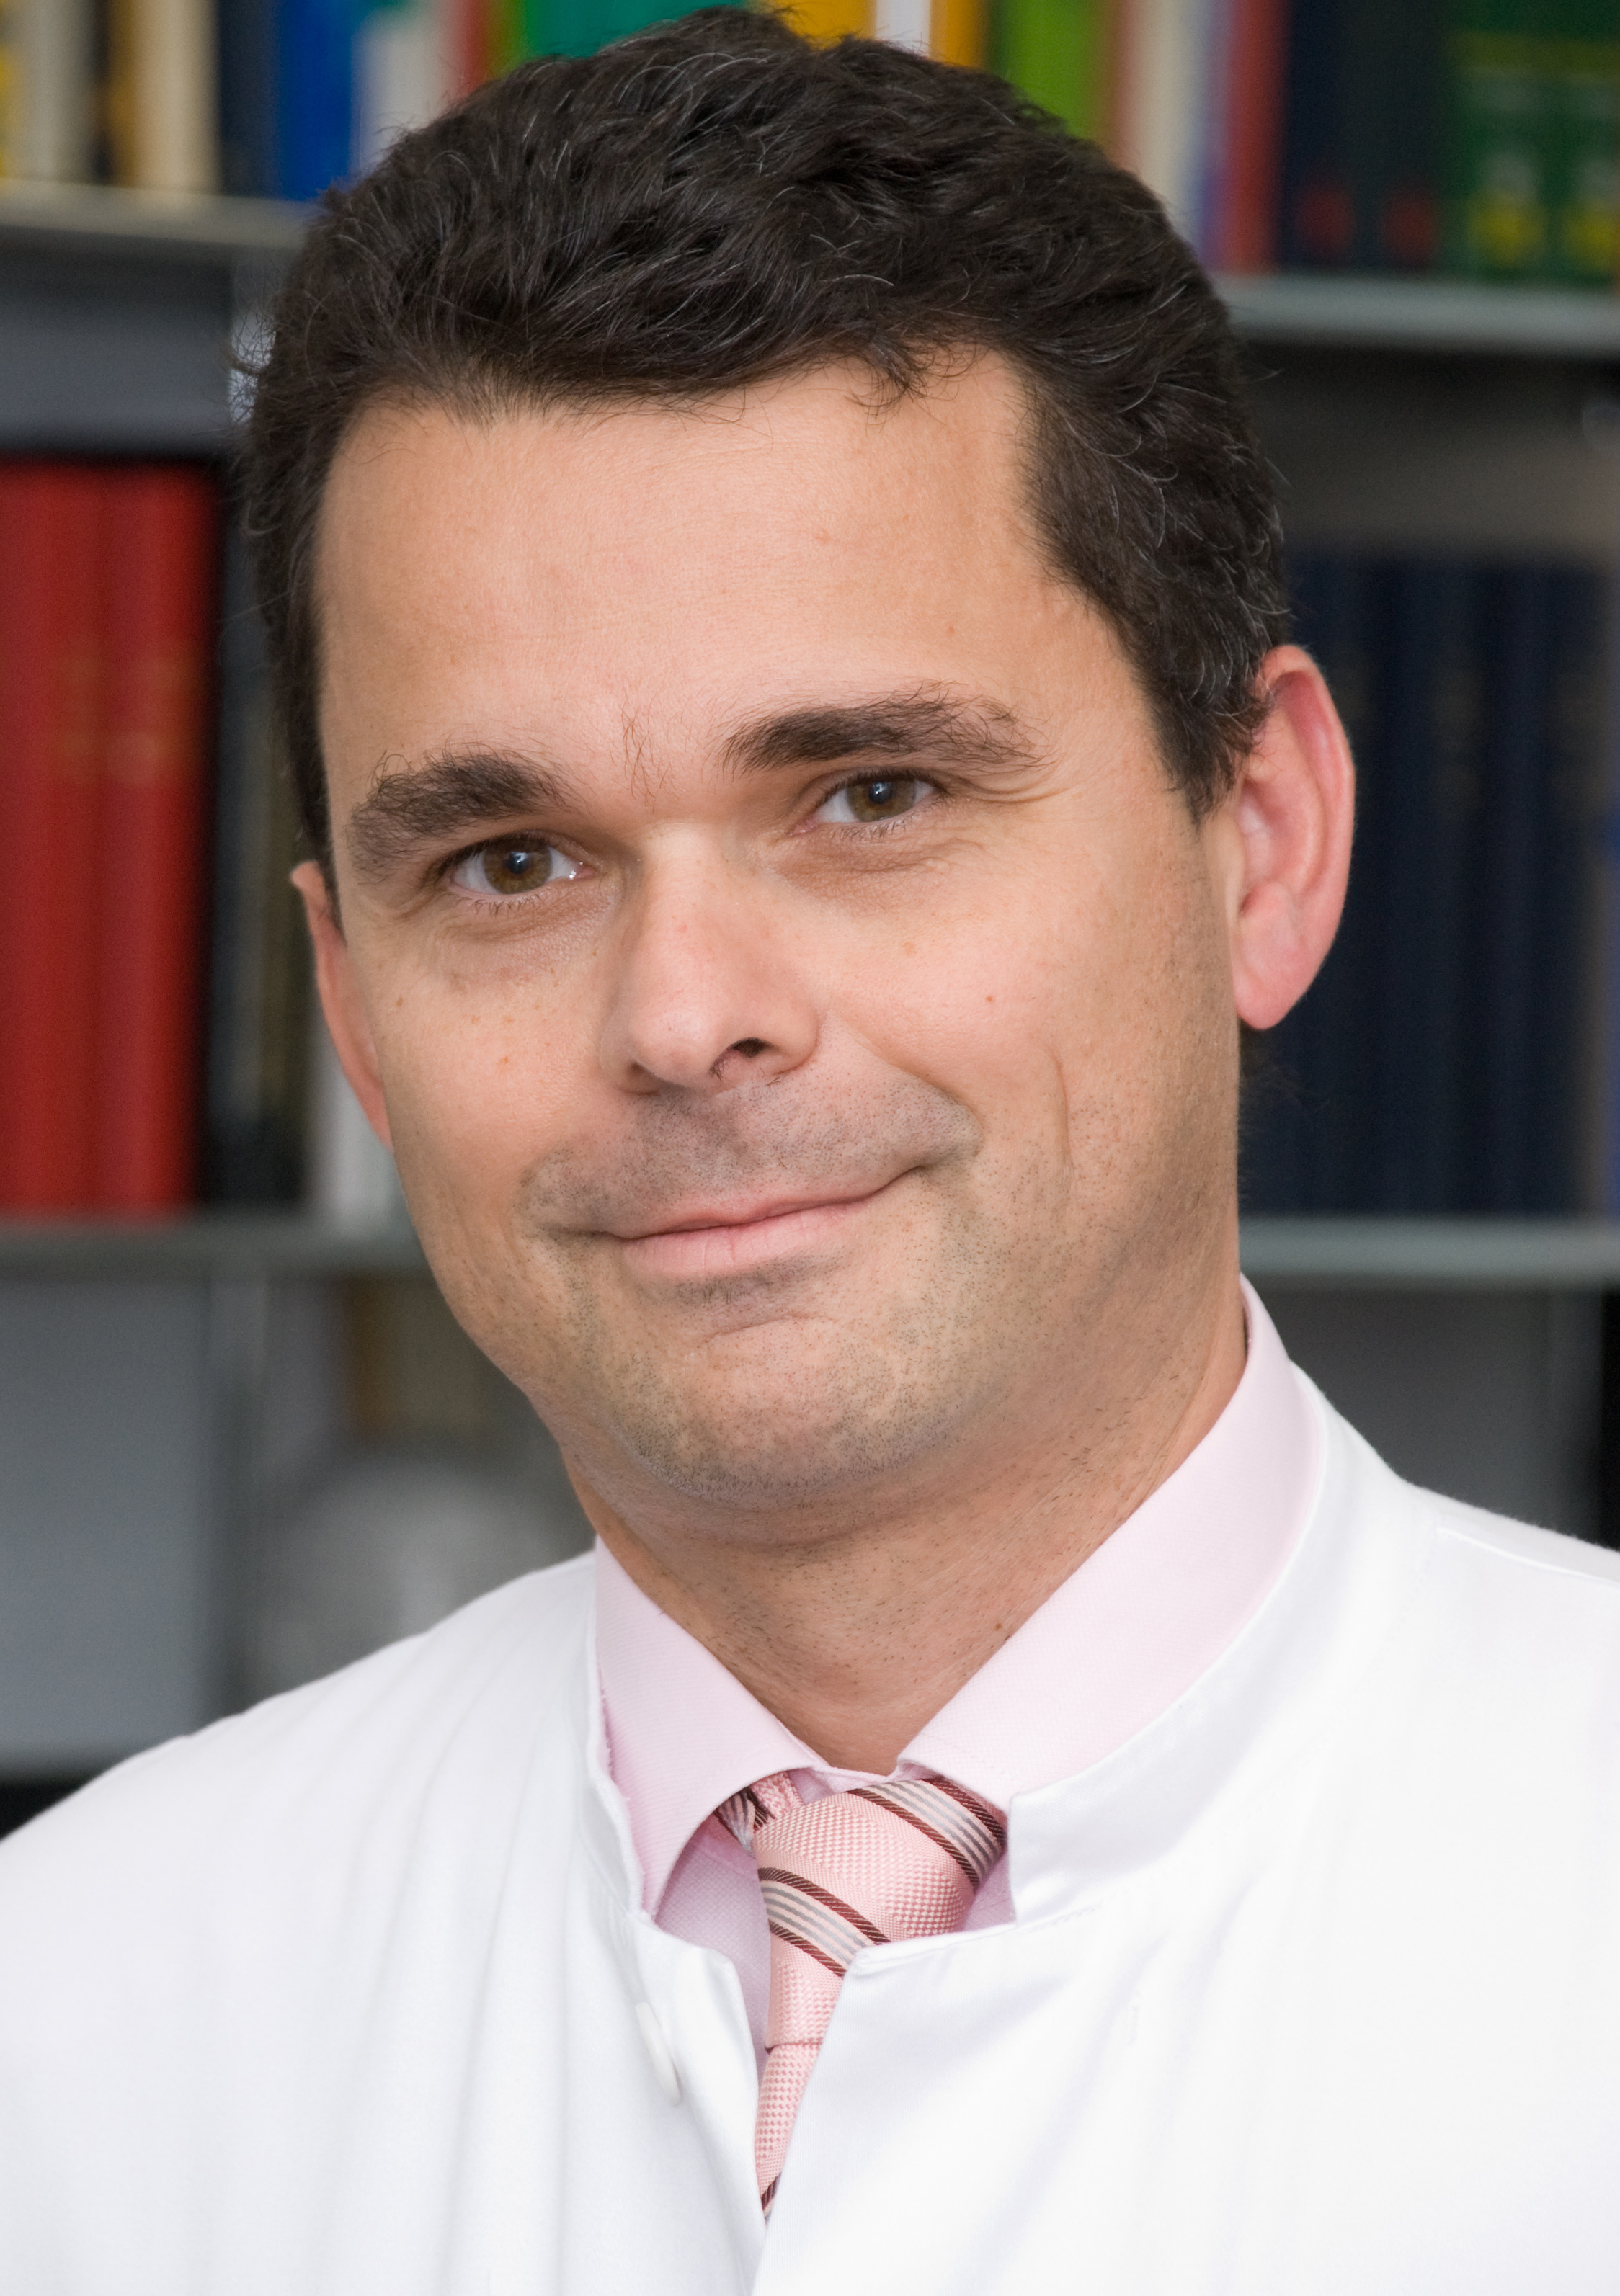 Prof. Dr. med. Ulrich Sure